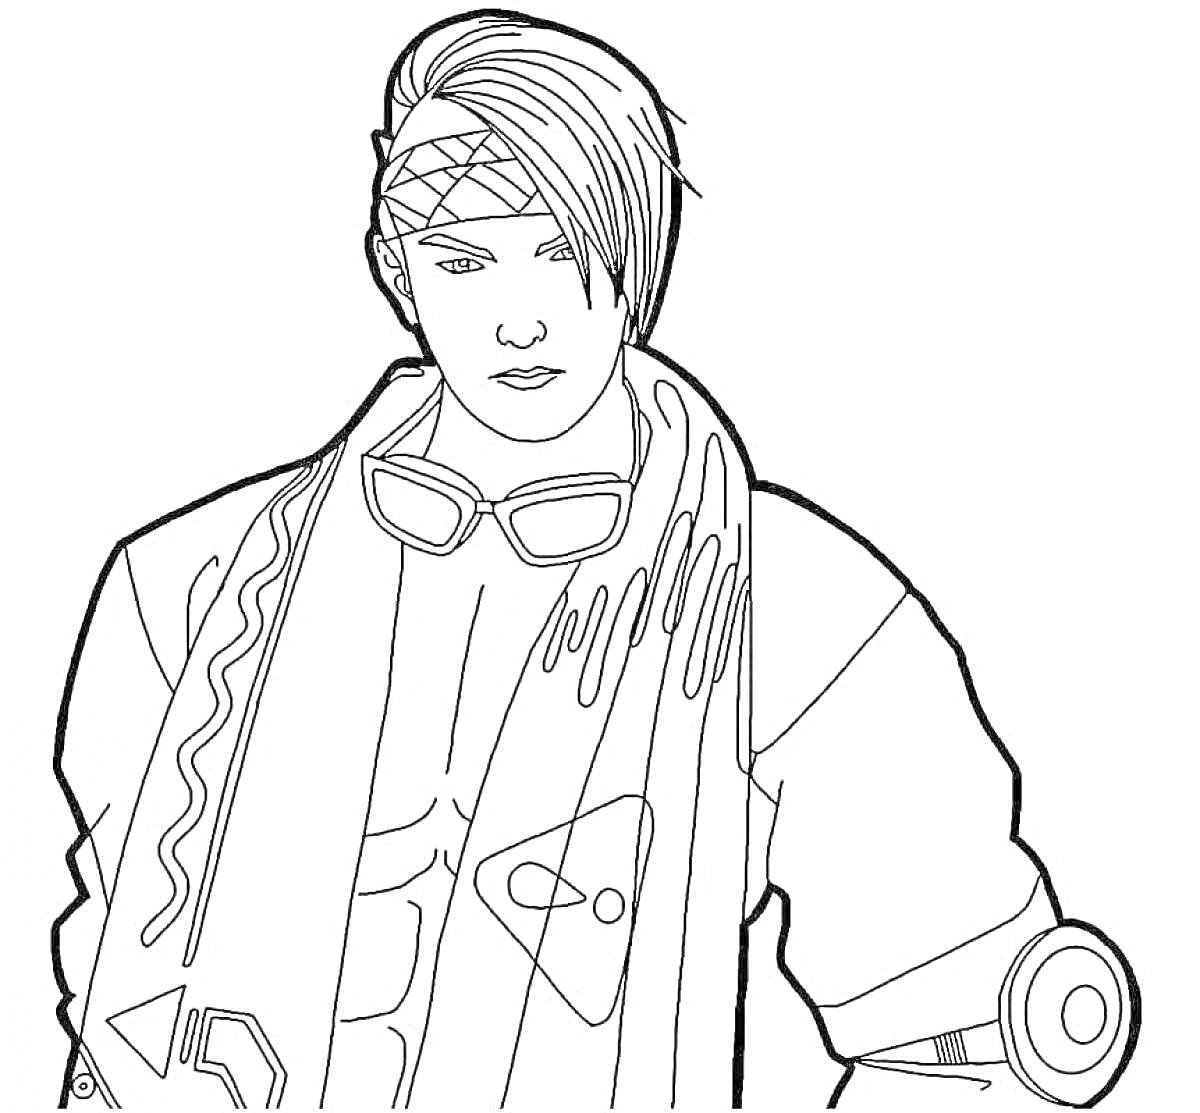 Раскраска Персонаж Free Fire с повязкой на голове, очками на груди и шарфом, с элементами одежды, включая гиперсовременные детали на рукаве и груди